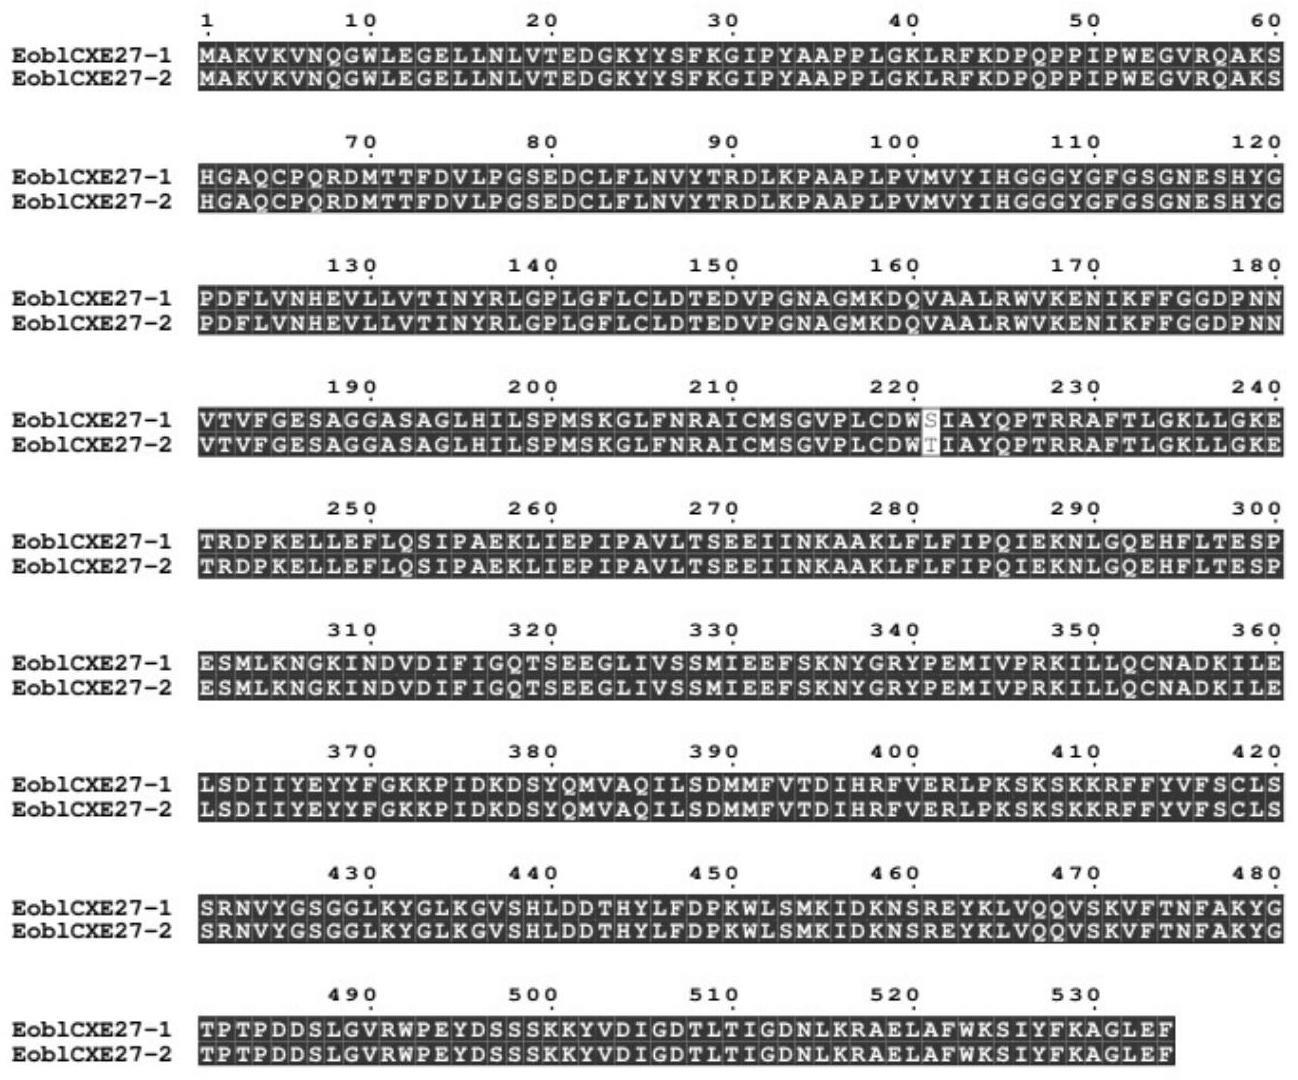 茶尺蠖触角酯酶EoblCXE27基因和该基因的干扰RNA及其应用